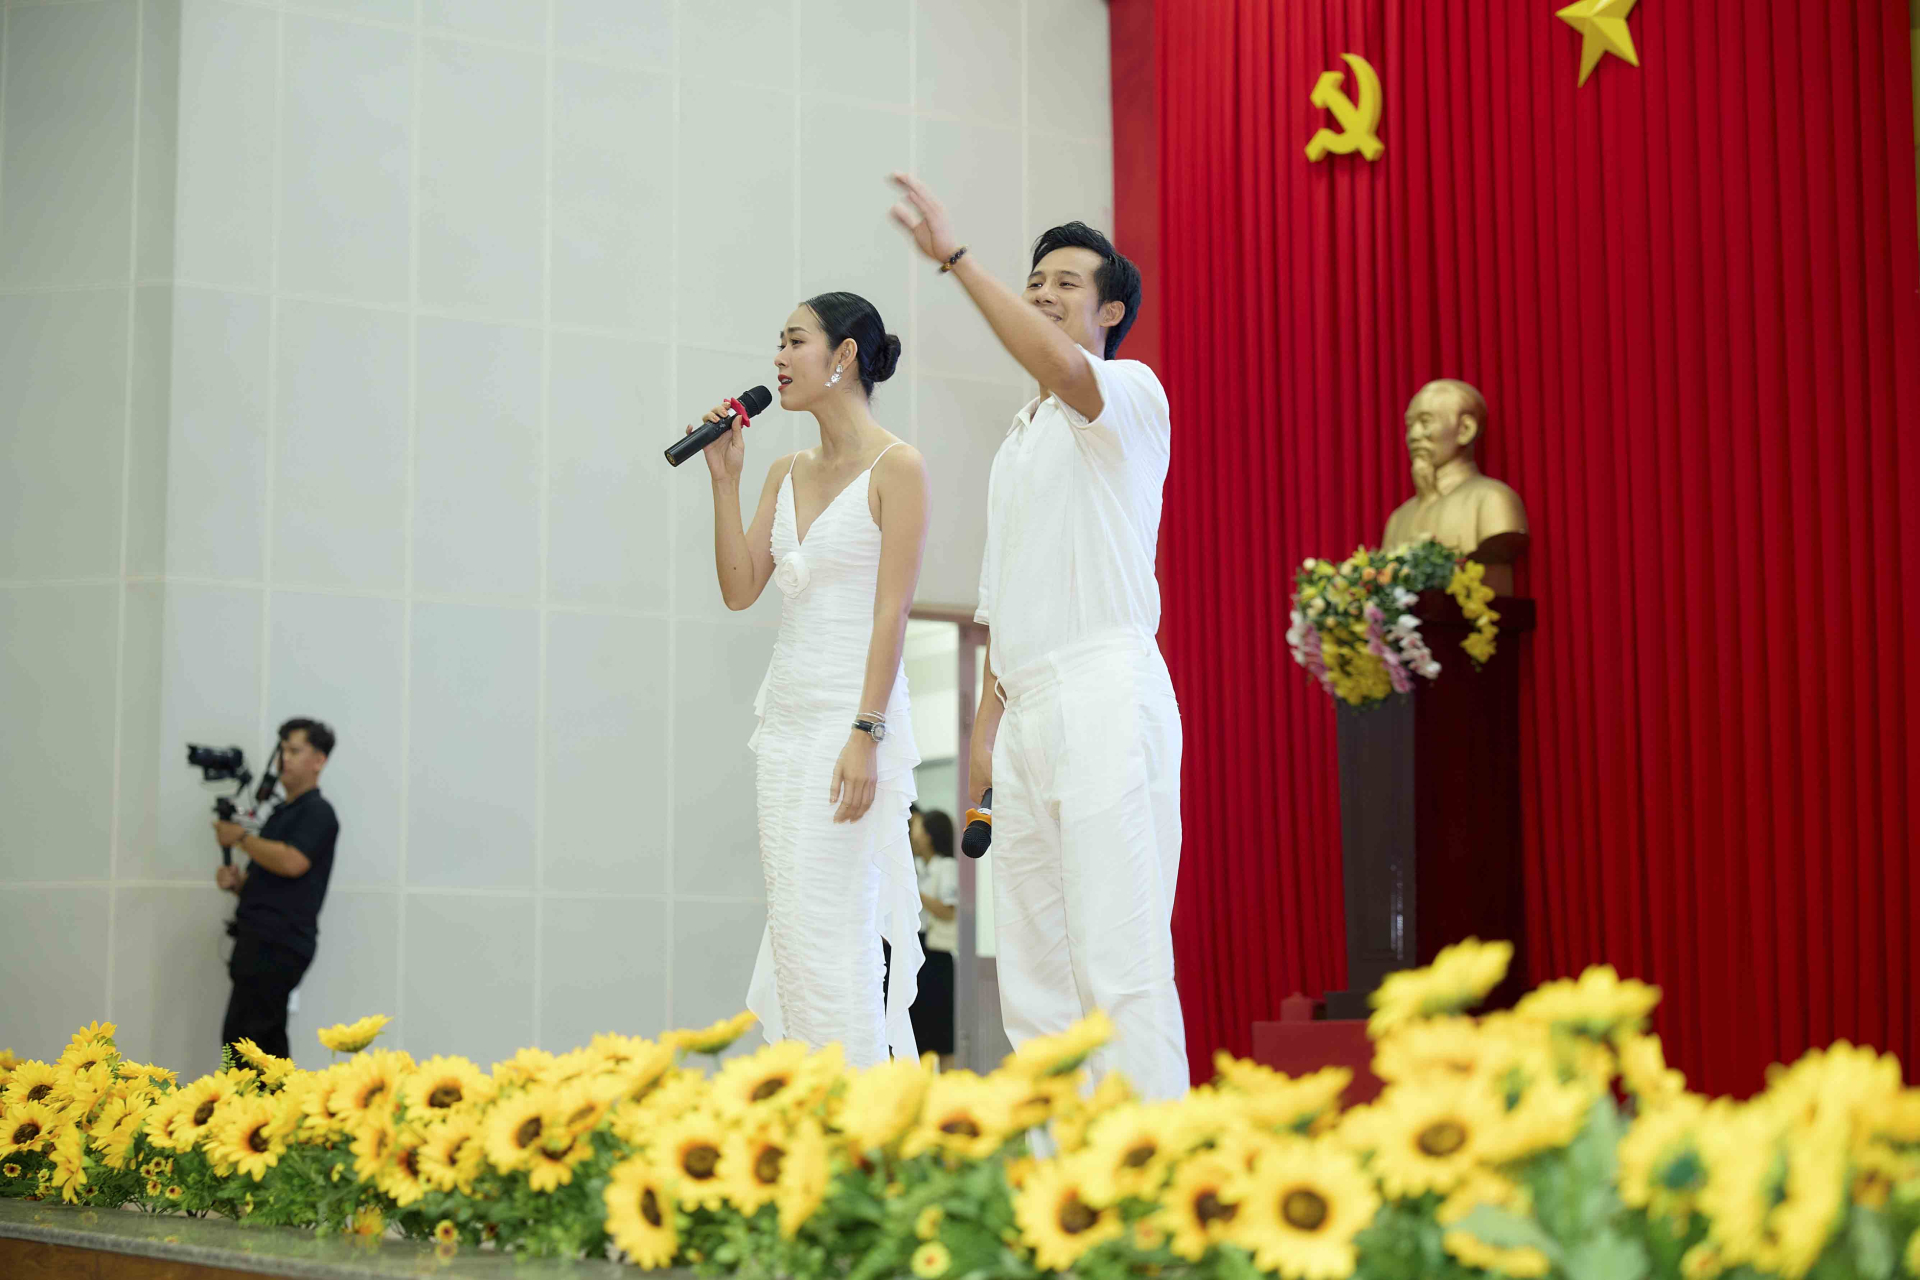 Bắt đầu chương trình, Diệp Bảo Ngọc xuất hiện khiến cả khán phòng nổ tung, nữ diễn viên thể hiện ca khúc Chung Đôi.